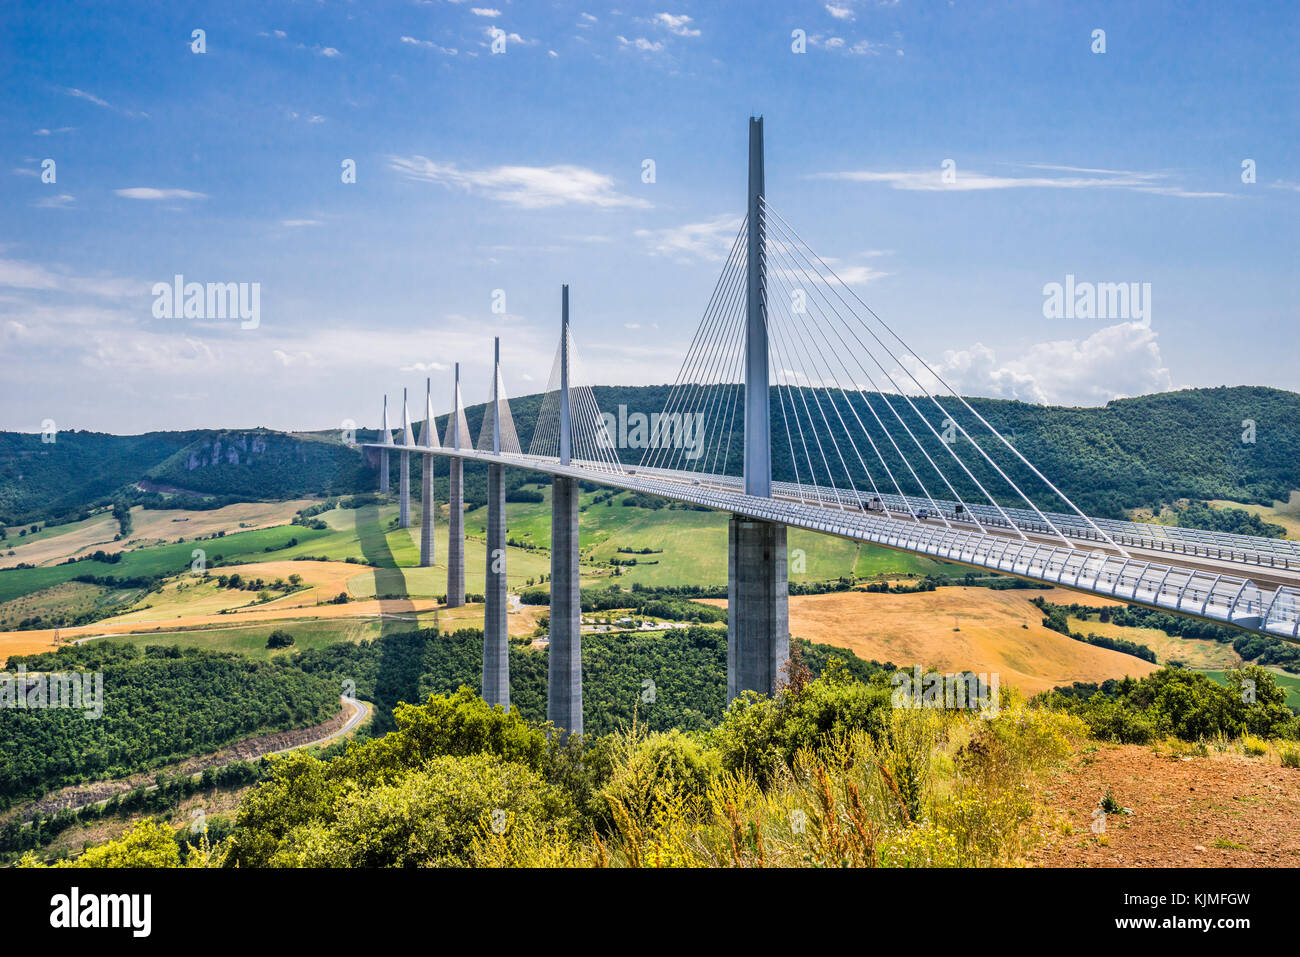 France, région Occitanie, département de l'Aveyron, le Viaduc de Millau (le Viaduc de Millau), pont à haubans enjambant la vallée des gorges du Tarn Banque D'Images